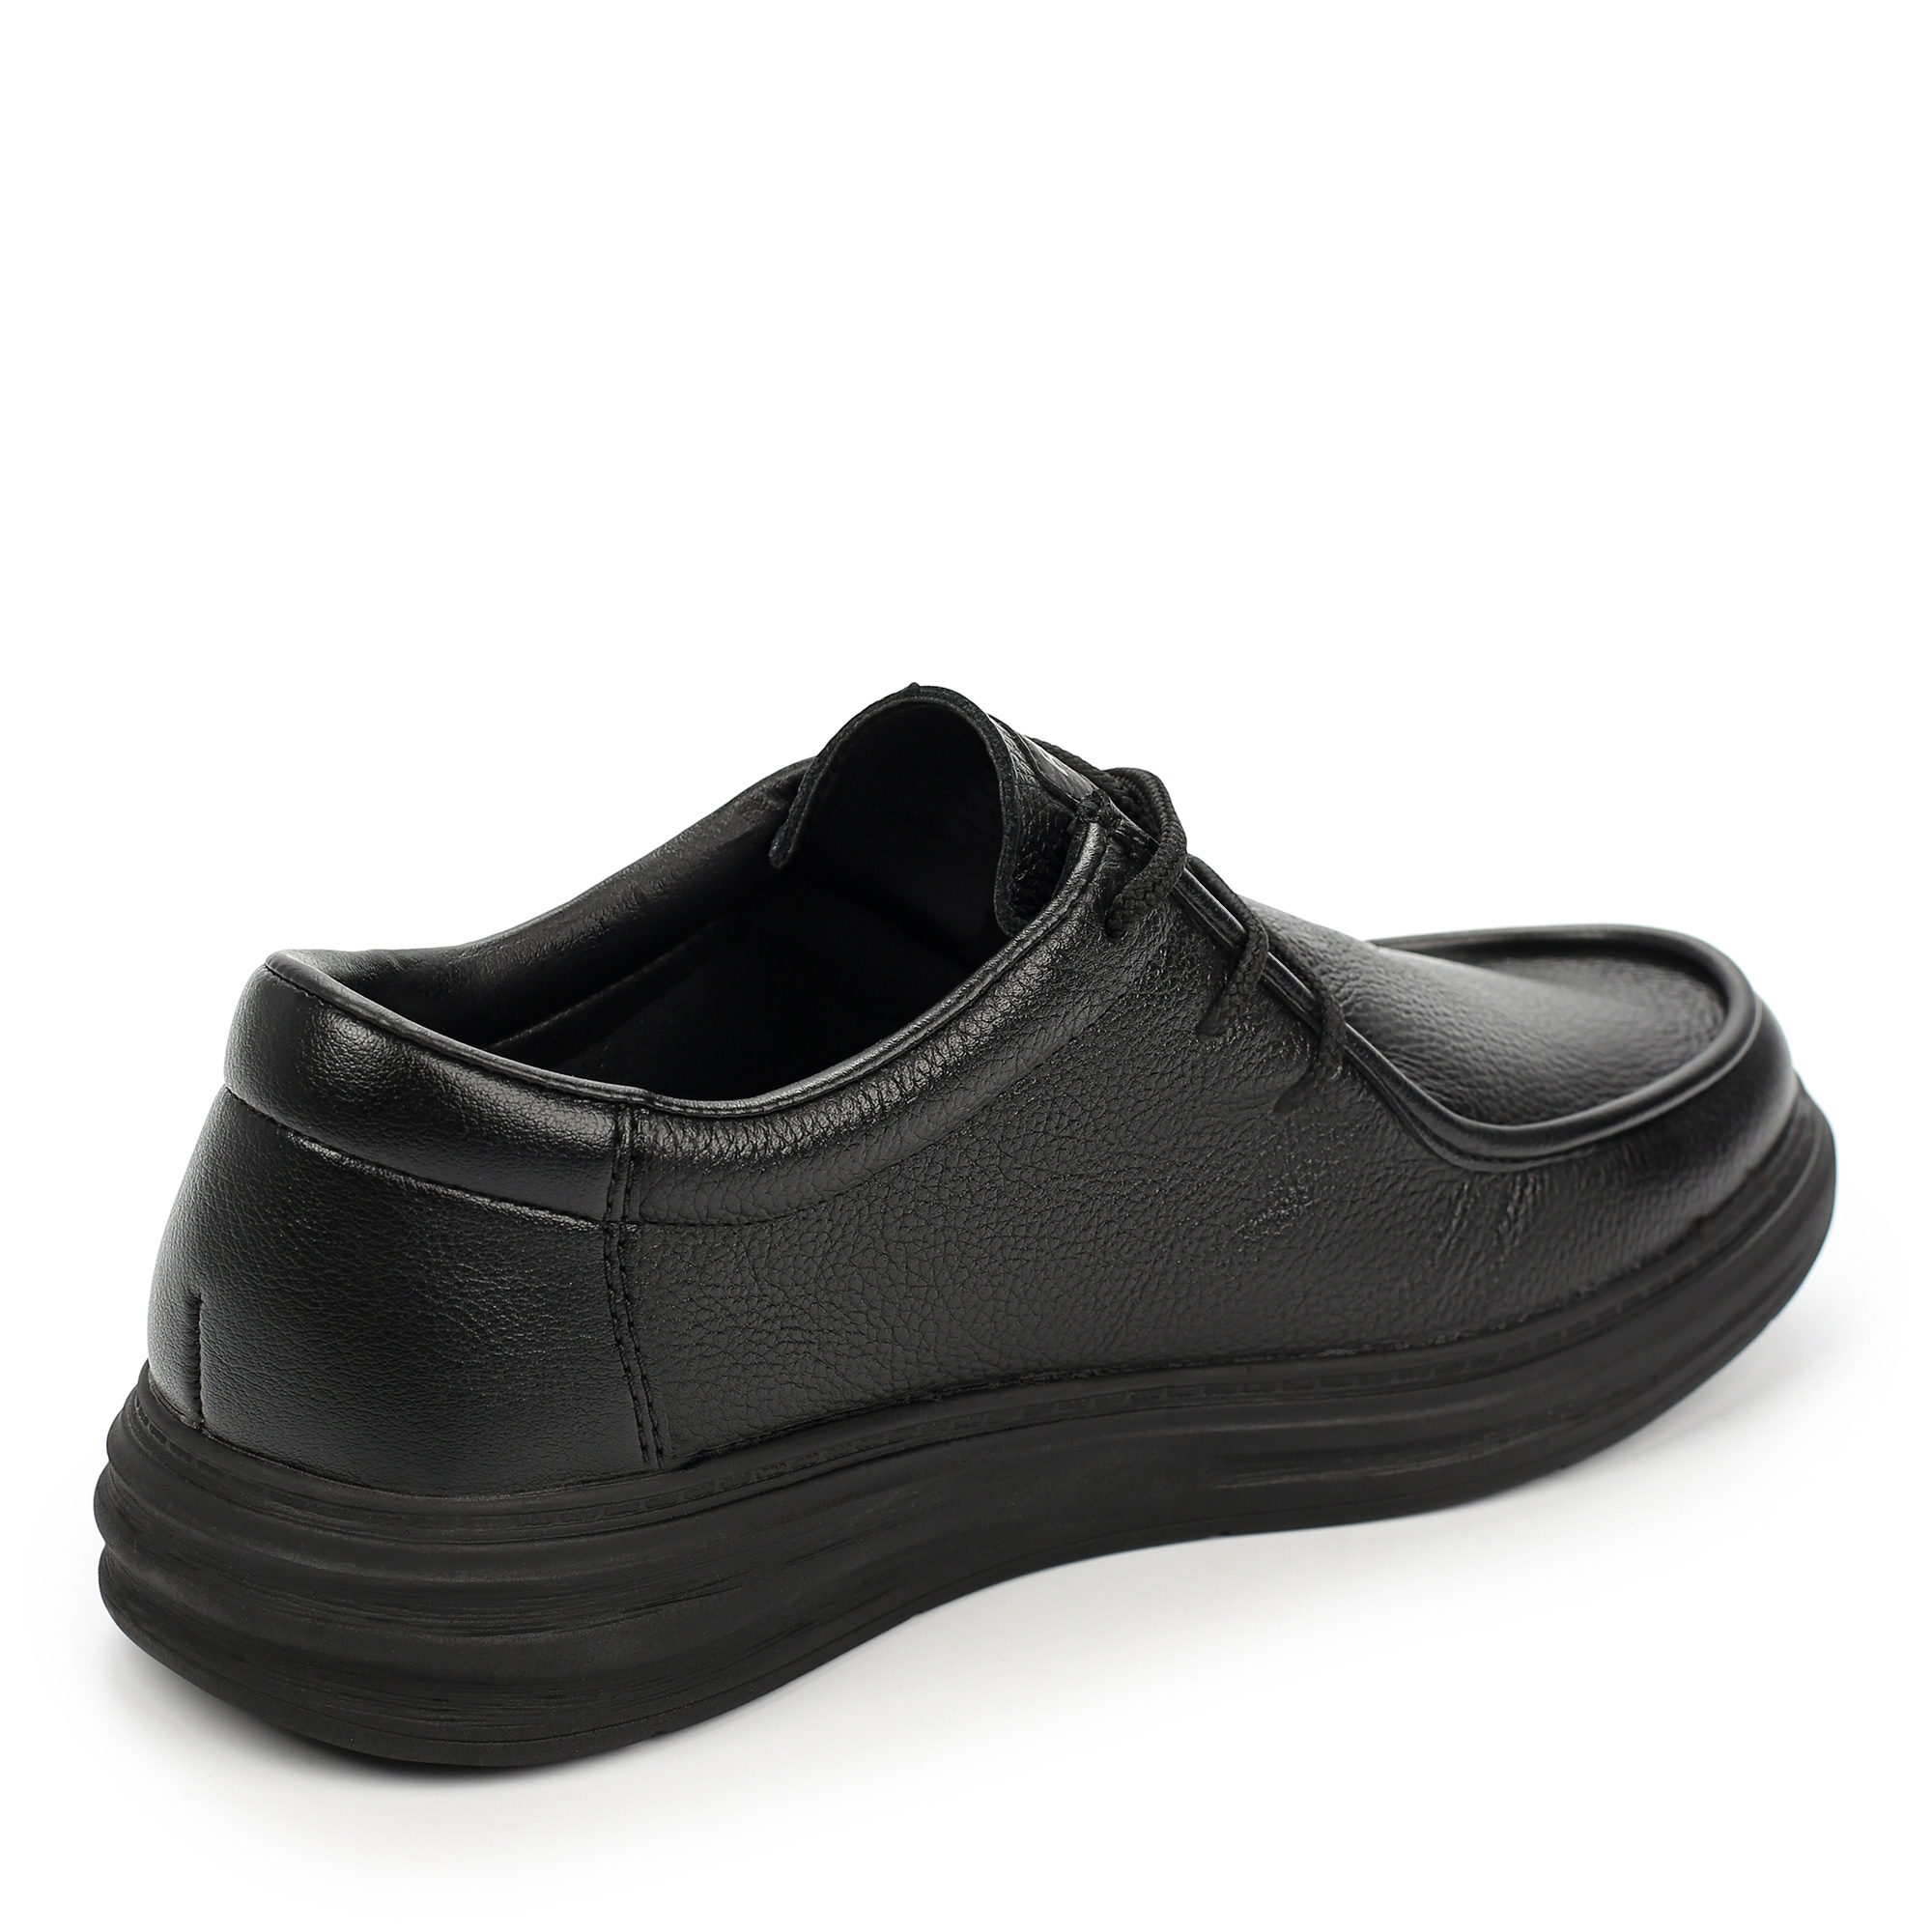 Туфли/полуботинки Rieker B6326-00, цвет черный, размер 41 - фото 3